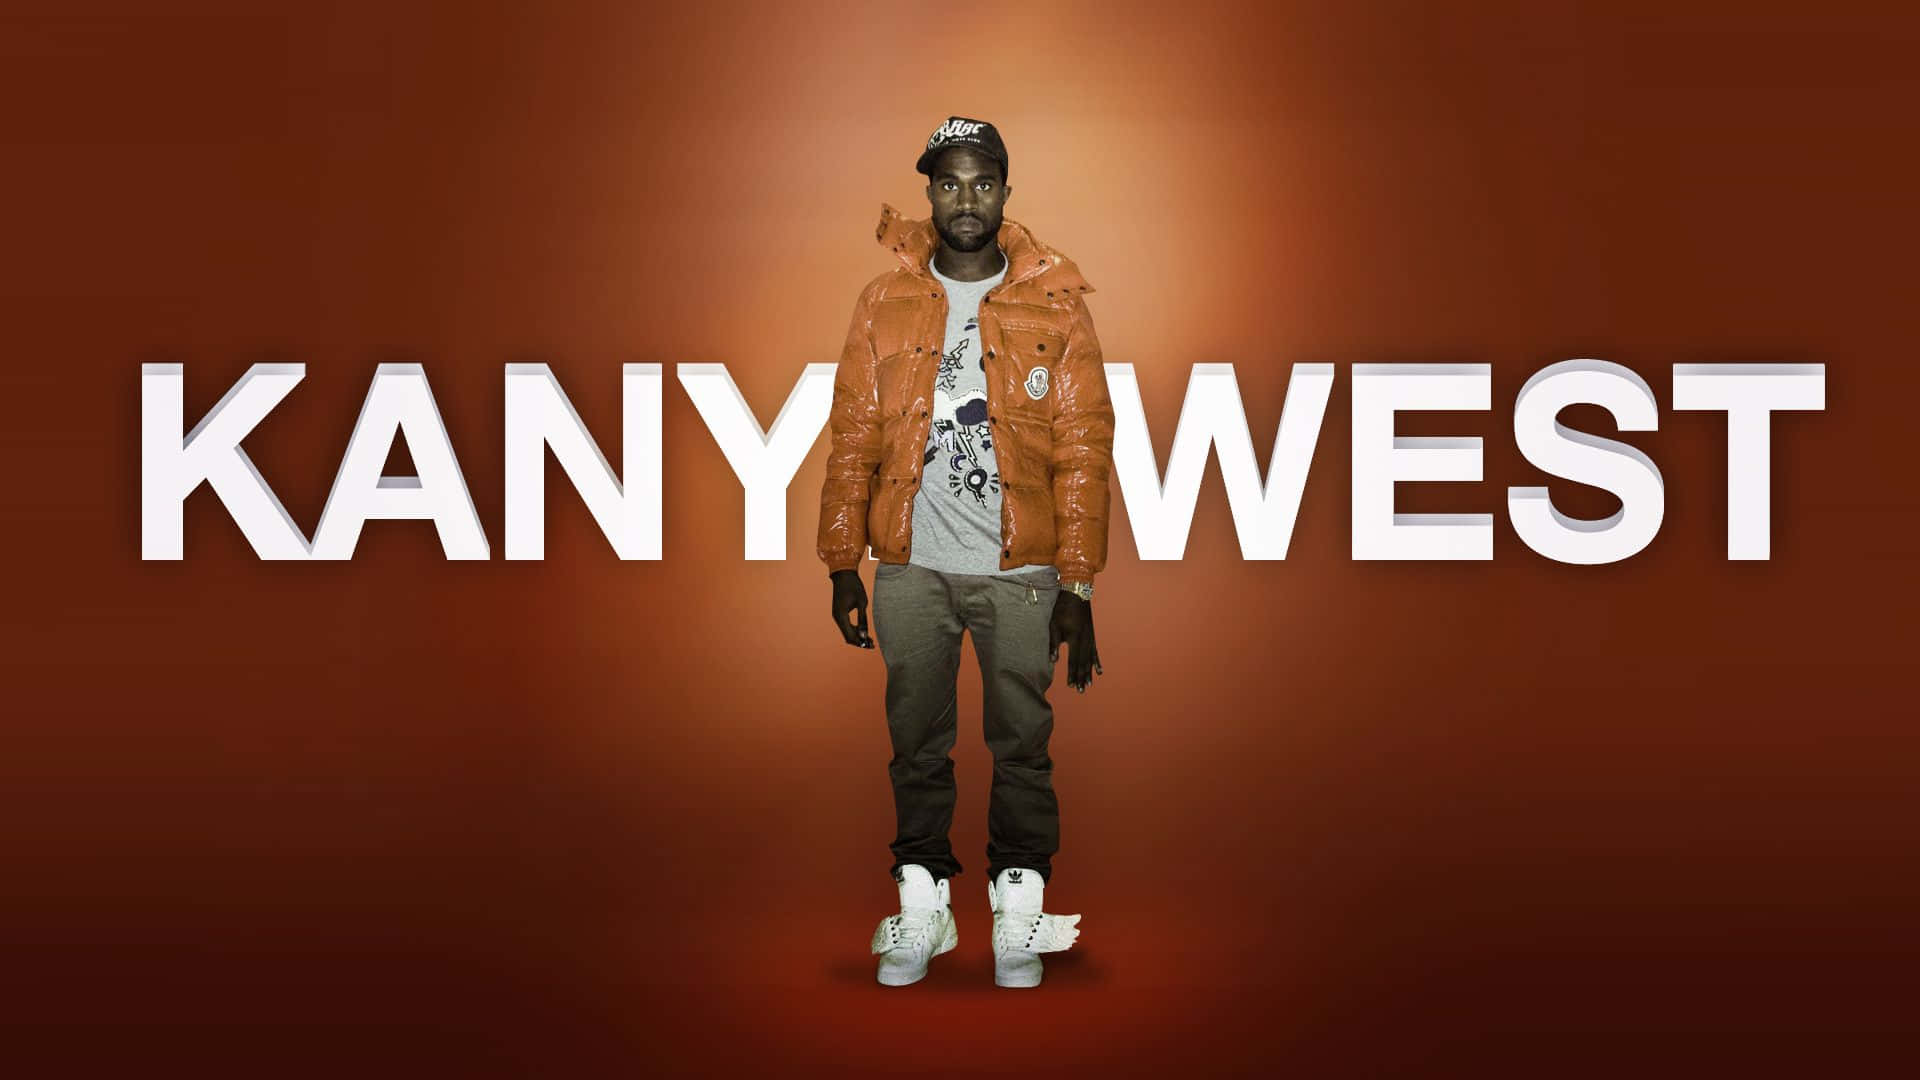 Bakgrundsbildmed Kanye West